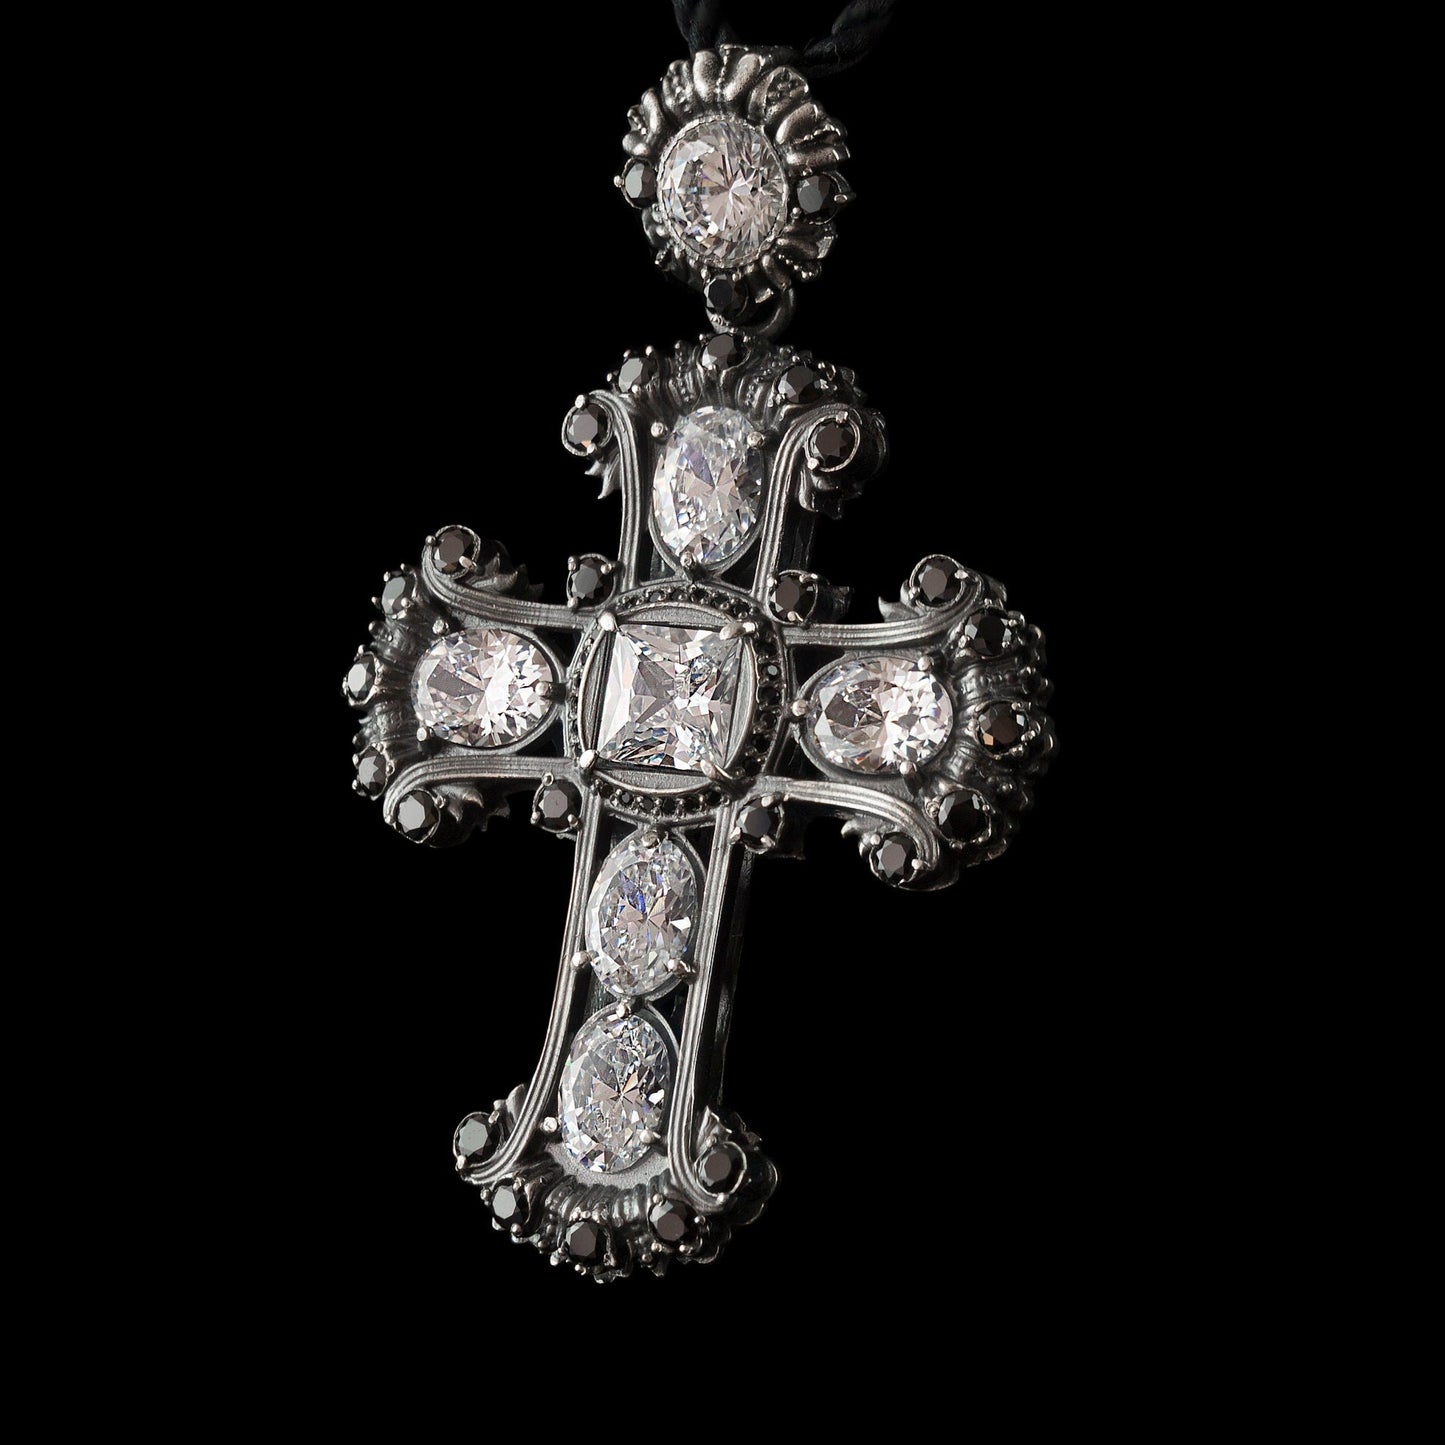 Brilliant crystal cross Women's silver cross Black cross  Victorian jewelry Medieval Cross Women's pendant cross Antique Style jewelry